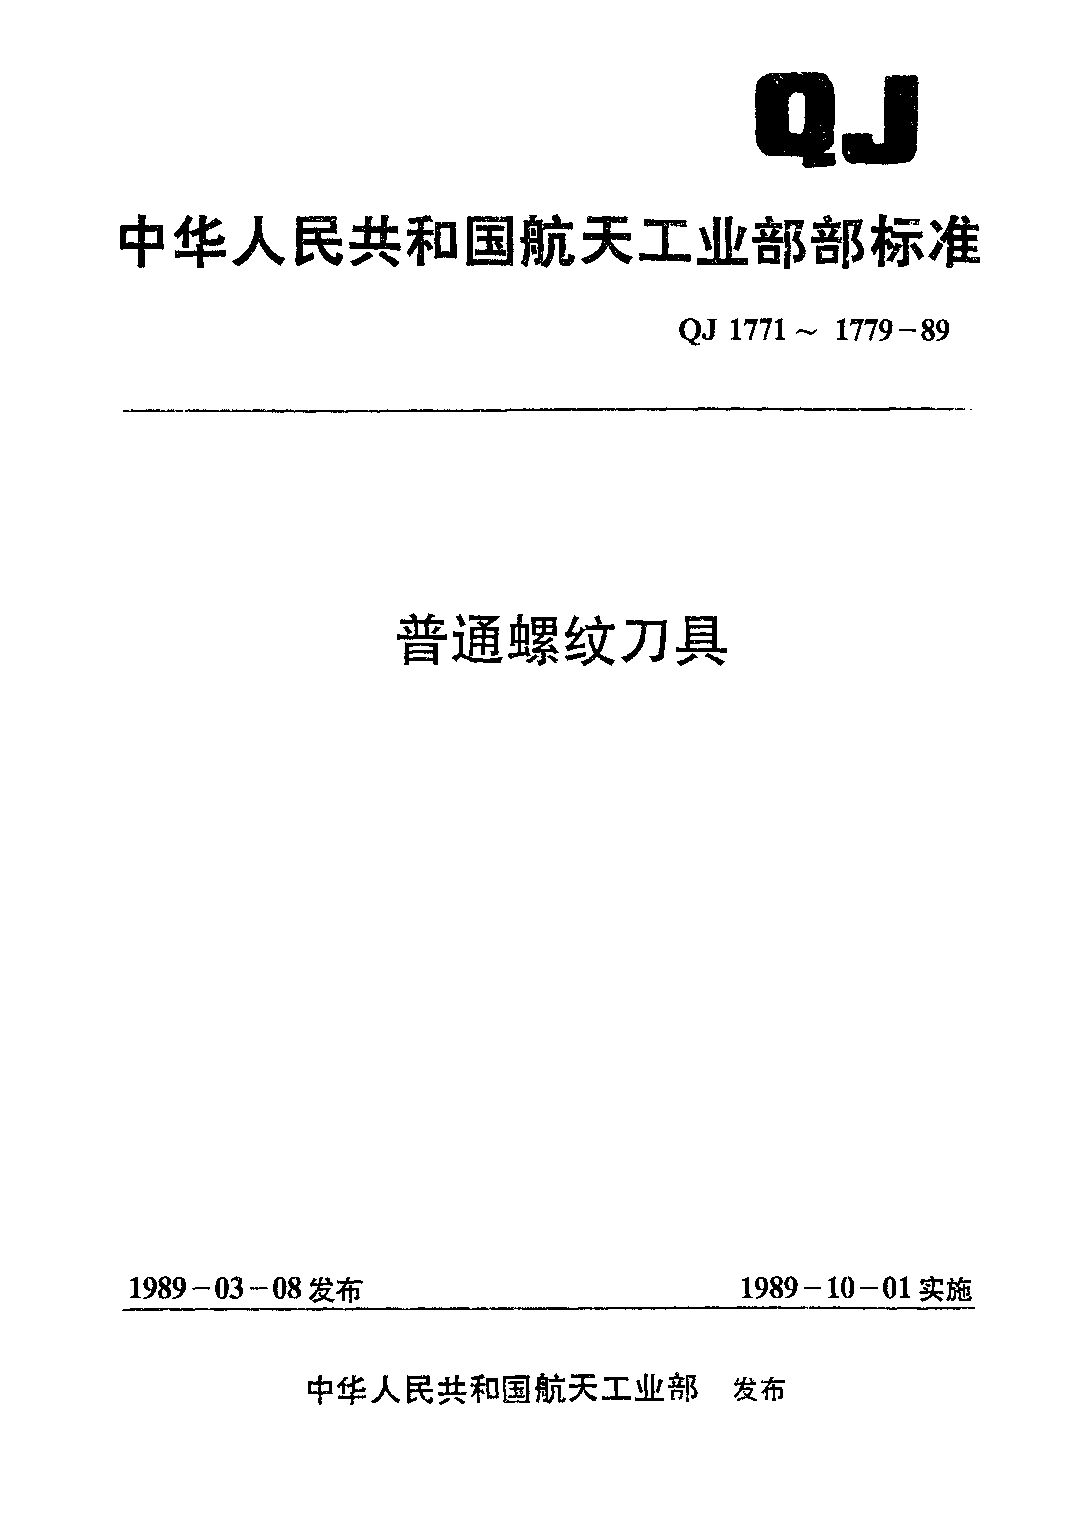 QJ 1775-1989封面图